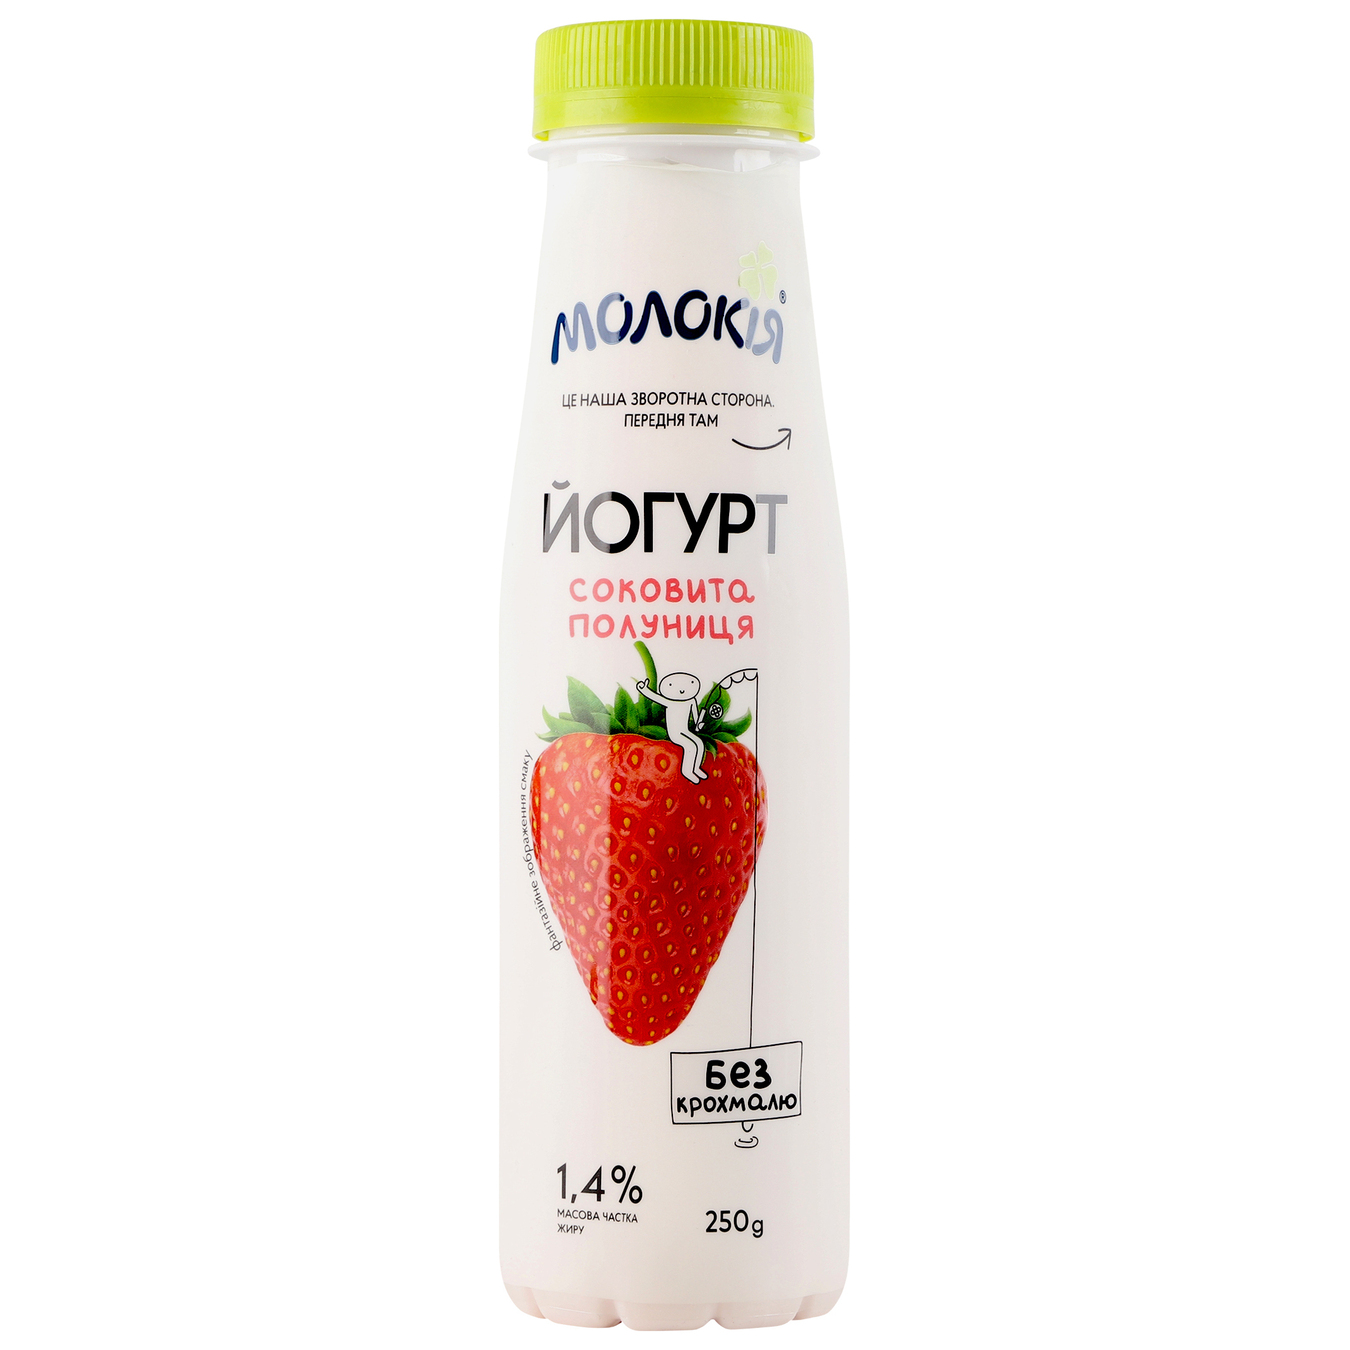 Йогурт Молокия Сочная клубника 1.4% 250г